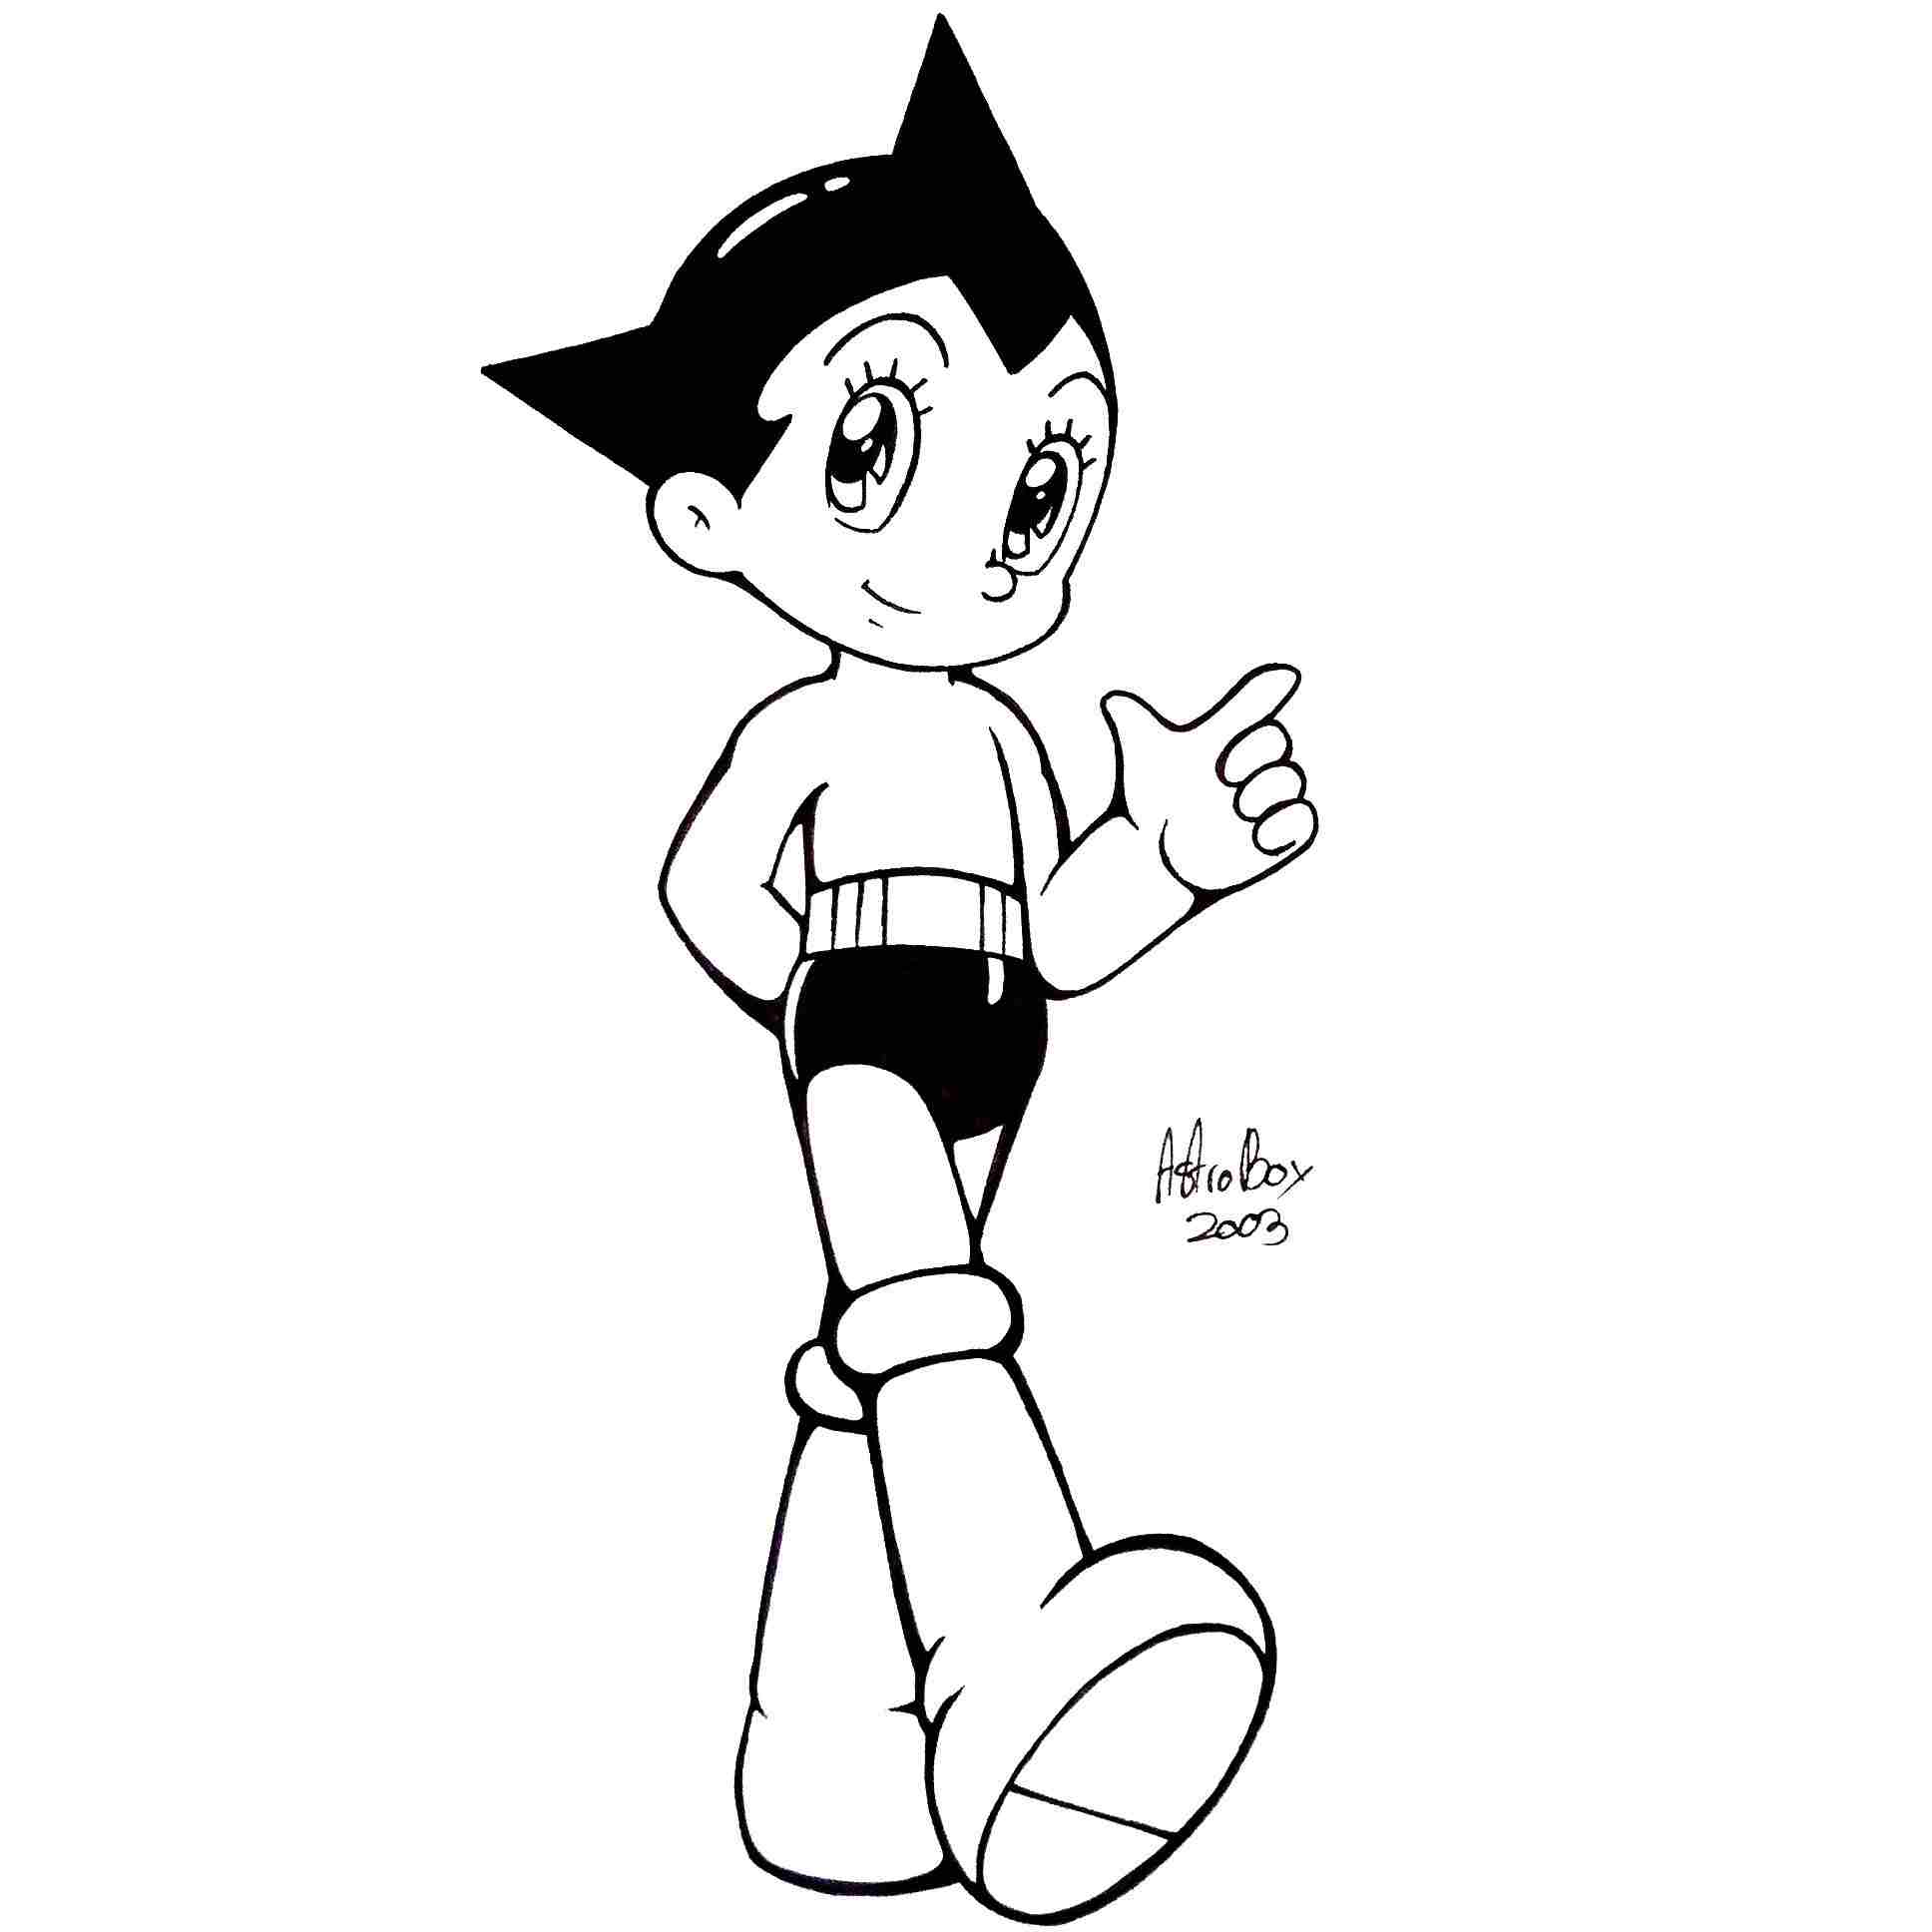 Astro Boy الوسيم في فيلم الرسوم المتحركة Astro Boy من Astro Boy